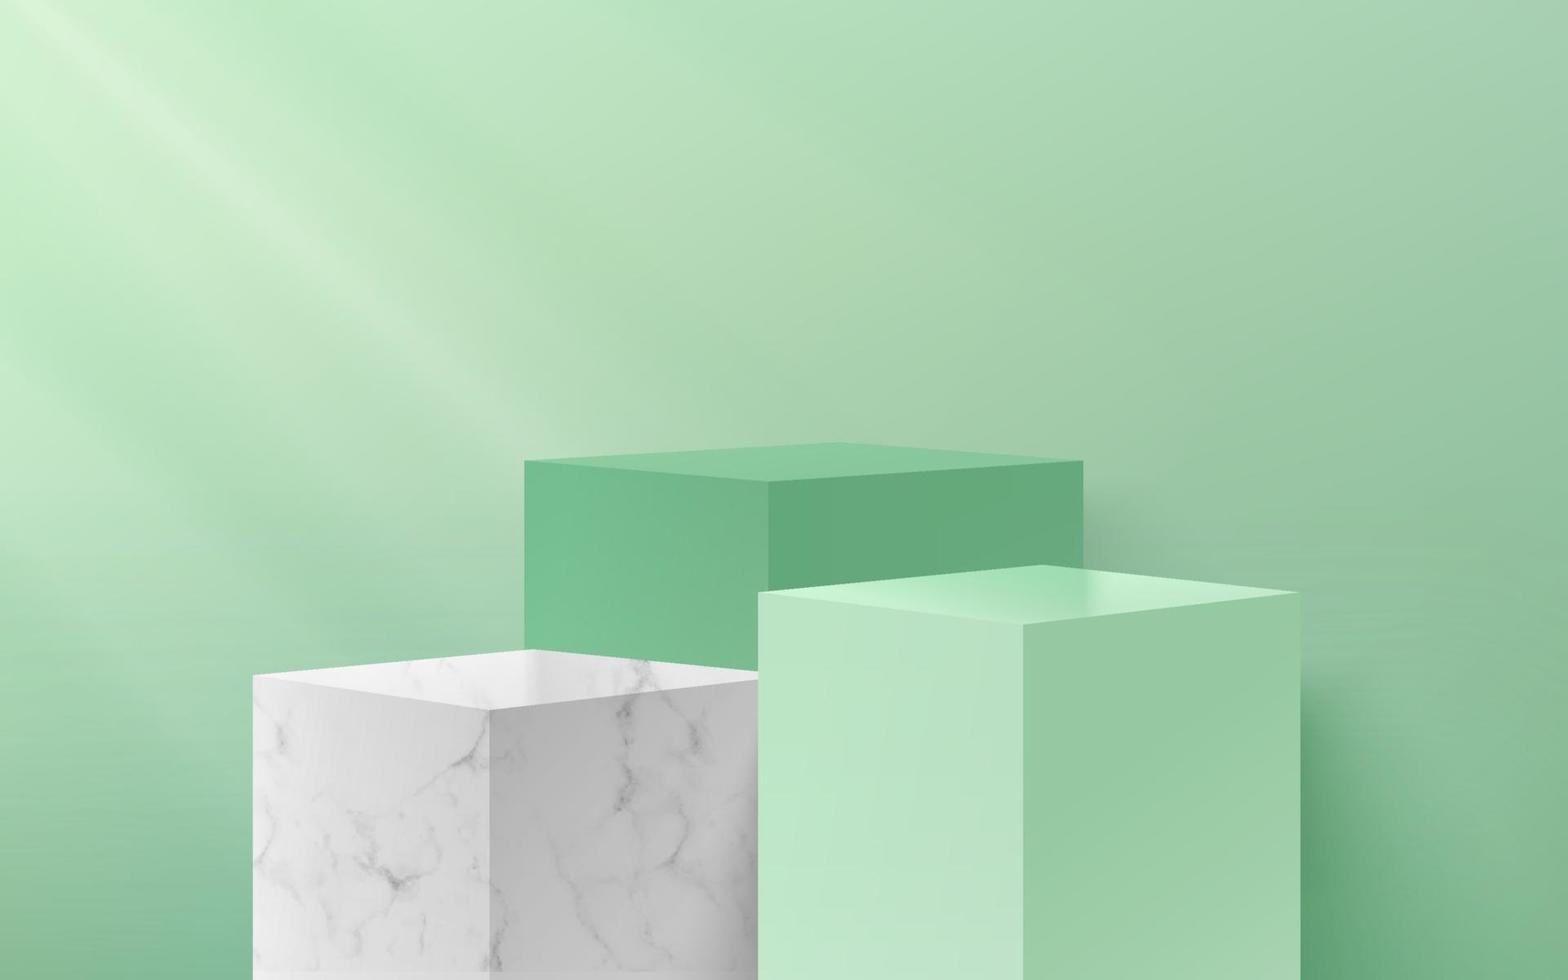 modernes grünes und weißes Marmorbeschaffenheitswürfelpodium mit Pastellleerem Raumhintergrund. abstrakte Vektor-Rendering 3D-Form für die Werbung von Produktdisplays mit Kopienraum. minimalistisches Szenestudiokonzept. vektor